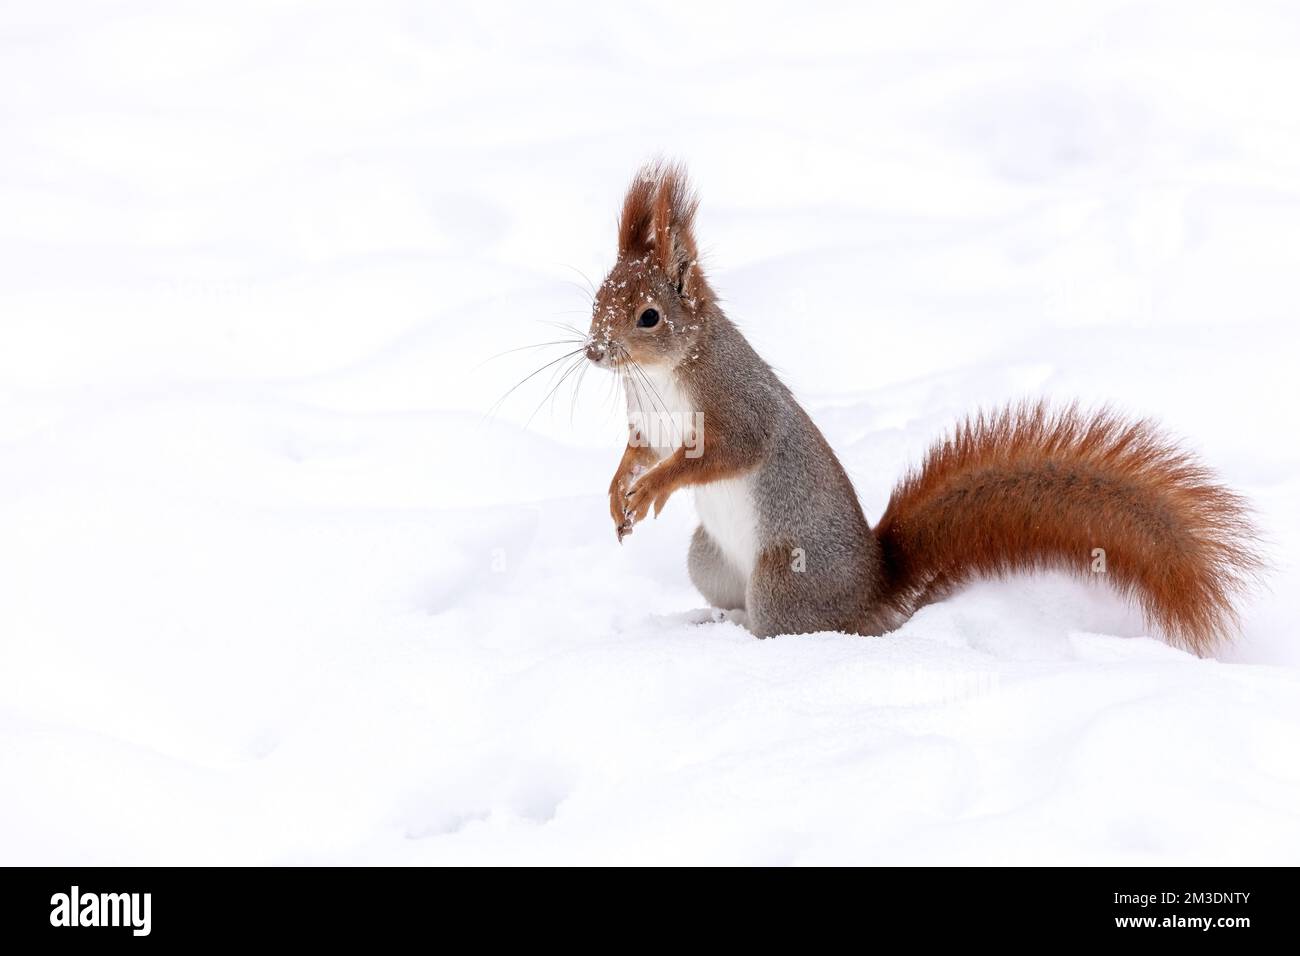 scoiattolo rosso giovane alla ricerca di cibo nel parco invernale, coperto di neve Foto Stock